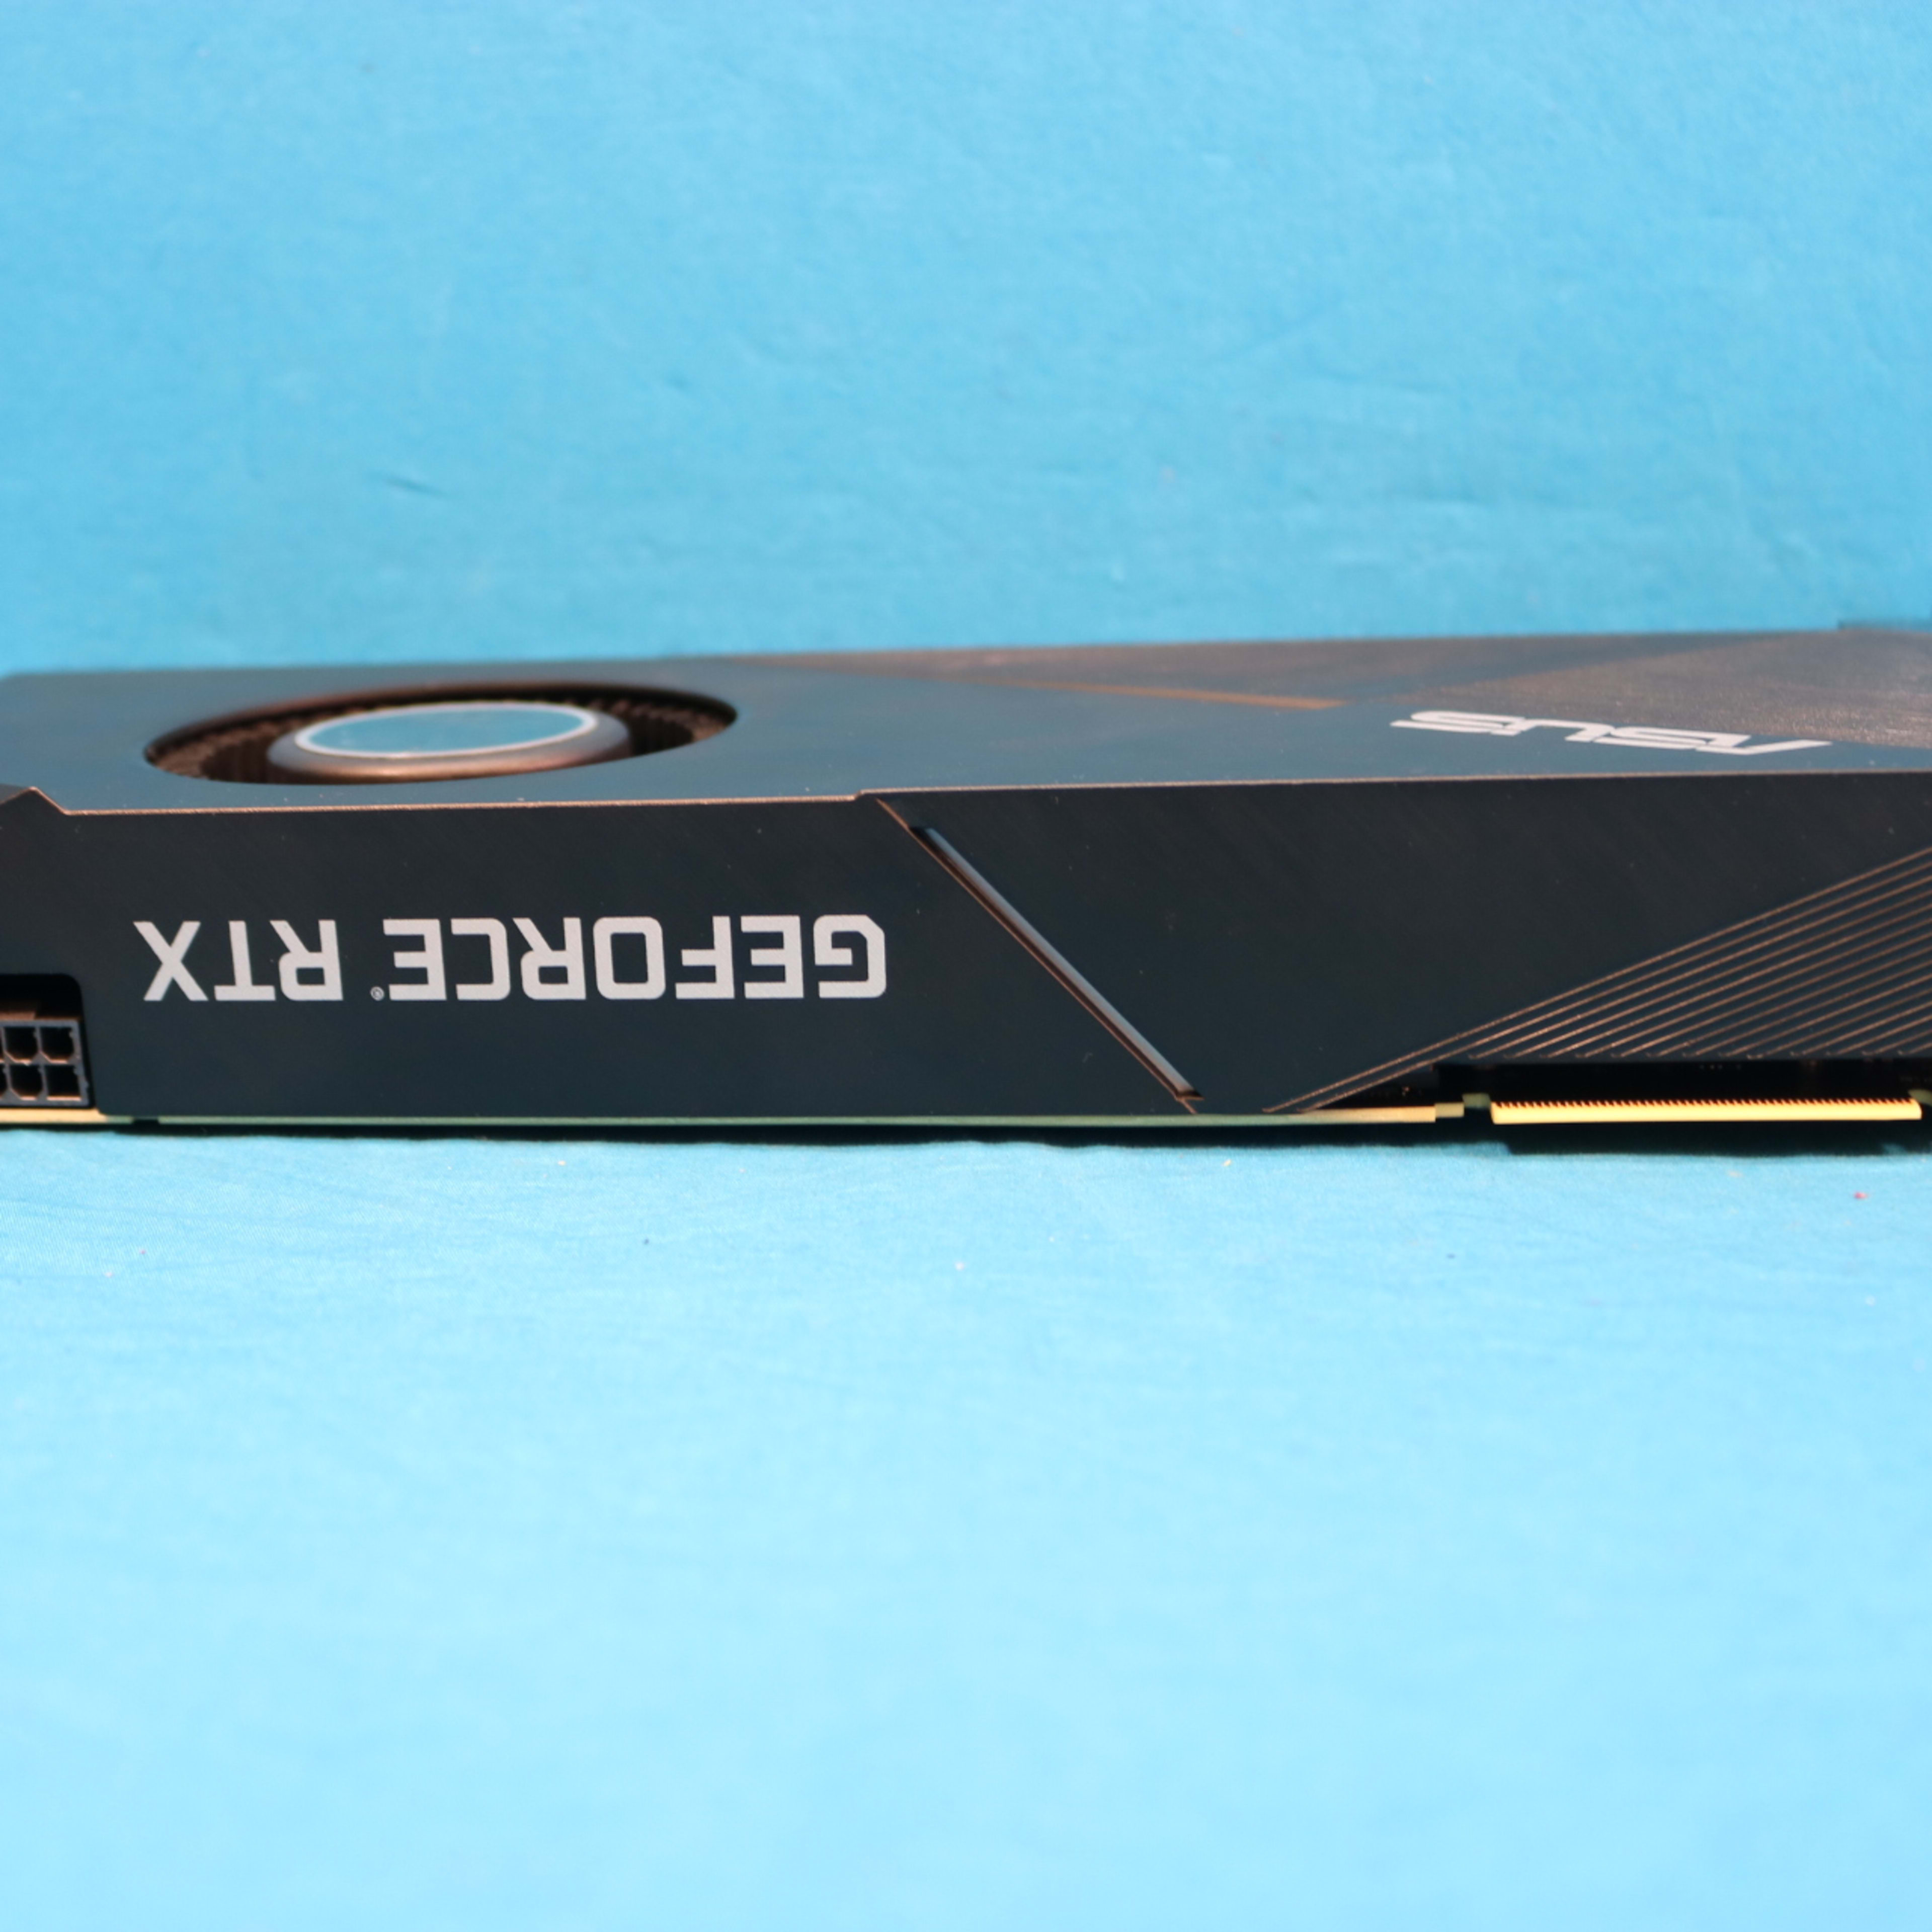 ASUS Turbo GeForce RTX 2080 Ti 11GB GDDR6 PCIe 3.0 x16 Desktop GPU - 4095349701